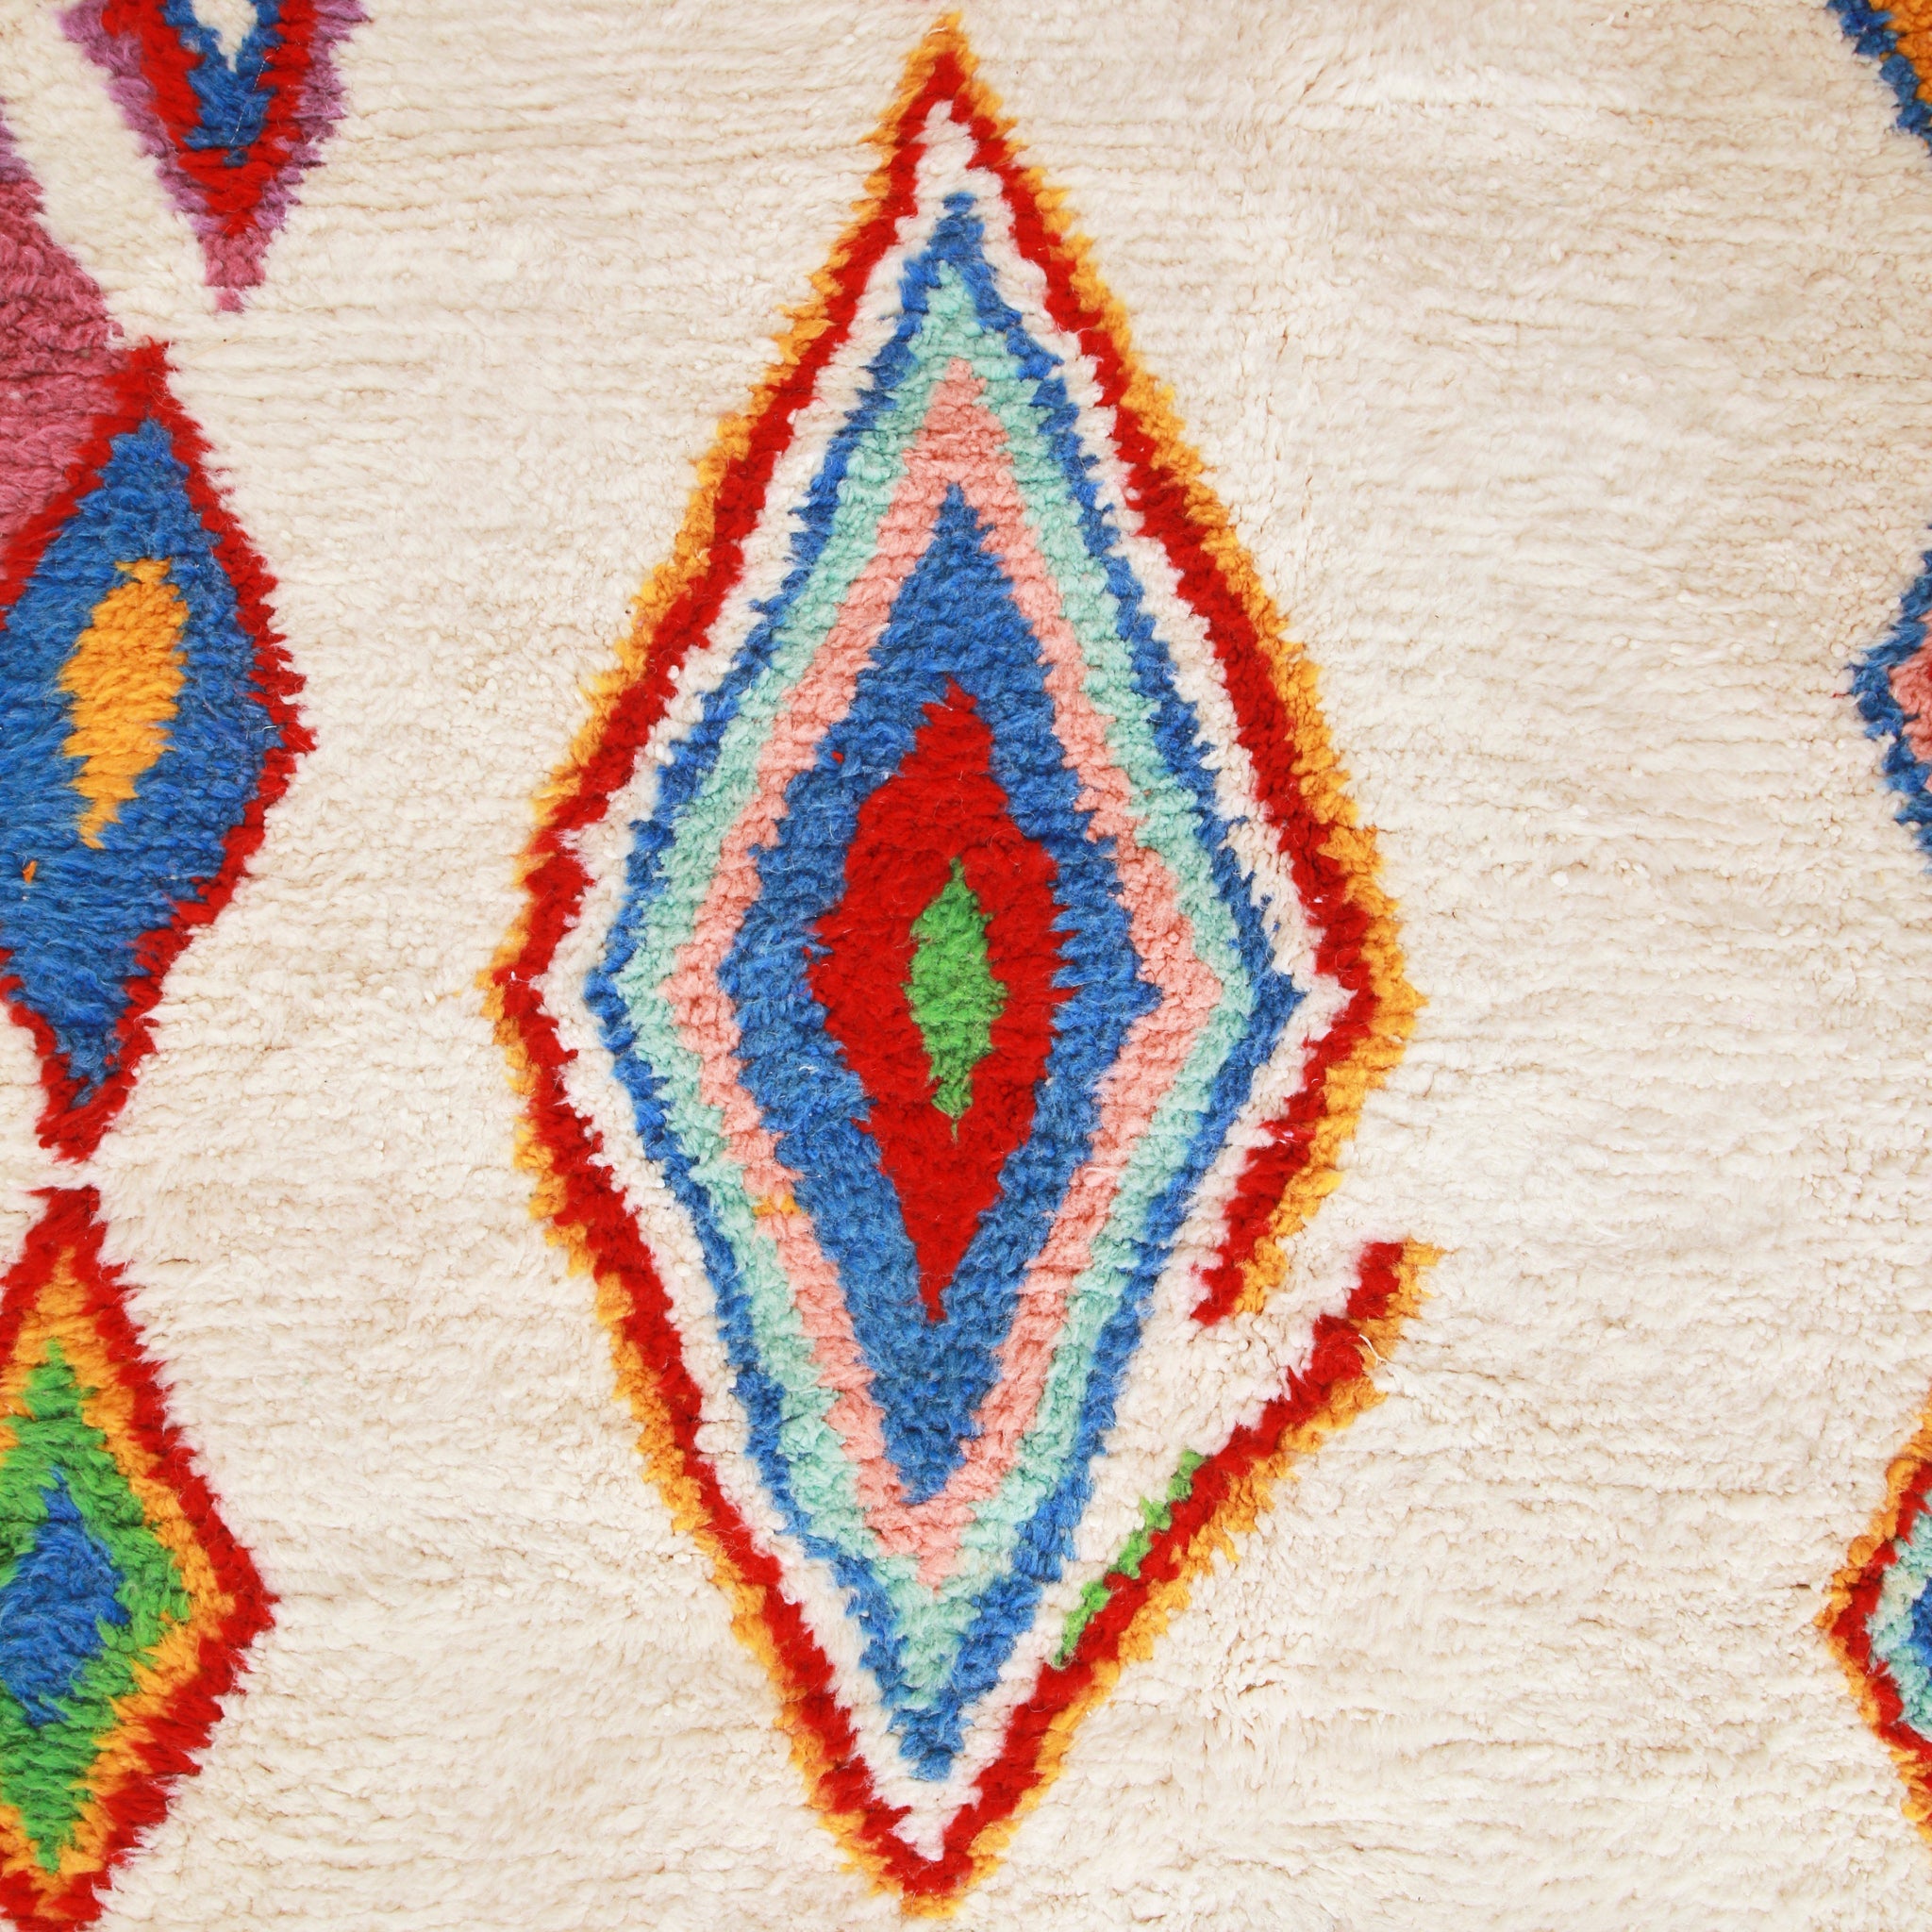 dettaglio di uno dei rombi di un tappeto azilal con mostrare i diversi colori che lo compongono